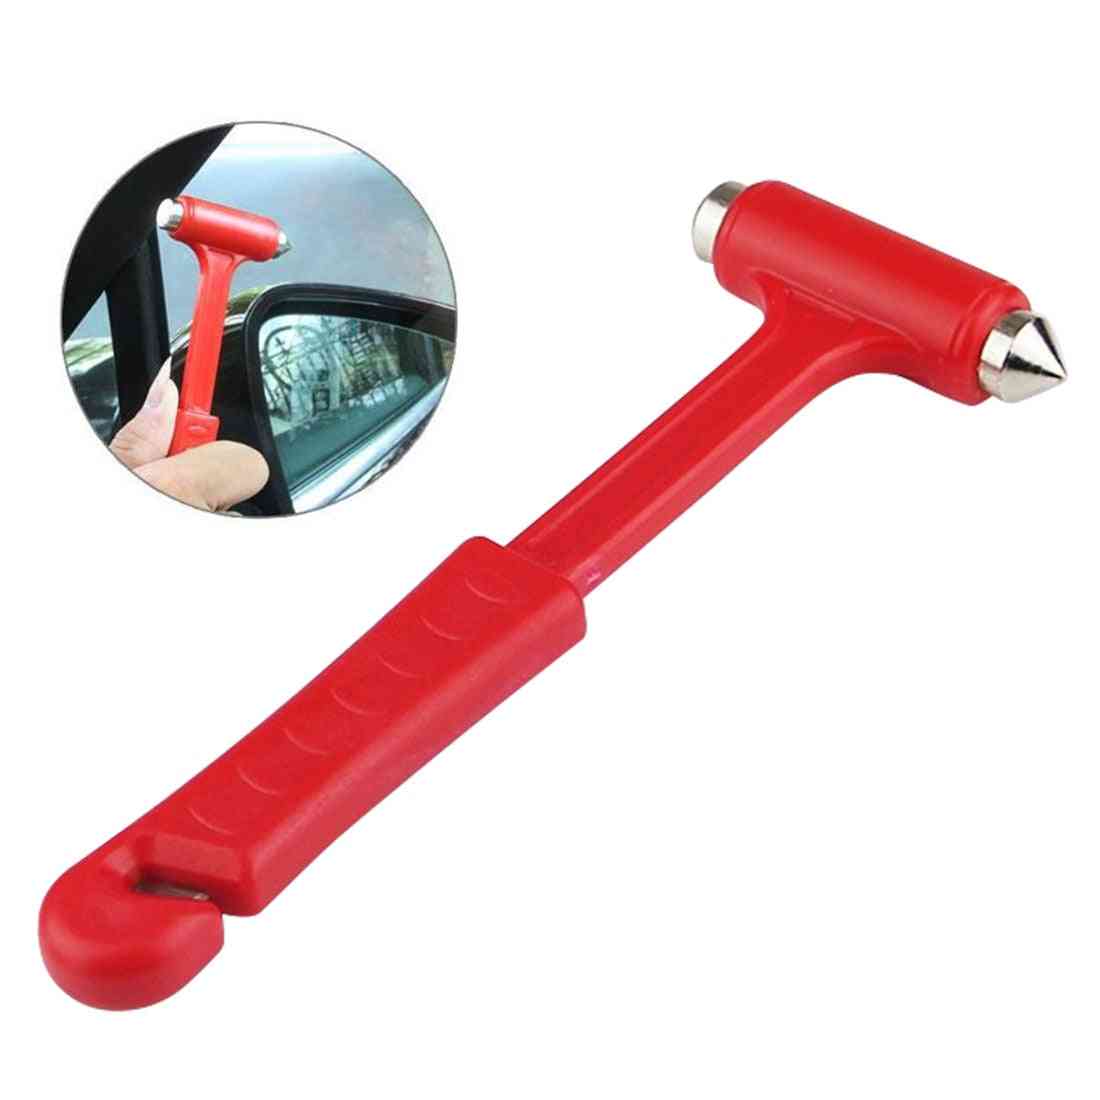 Self Escape Hammer For Fire Emergency, Knocking Glass, Window Breaker Tool